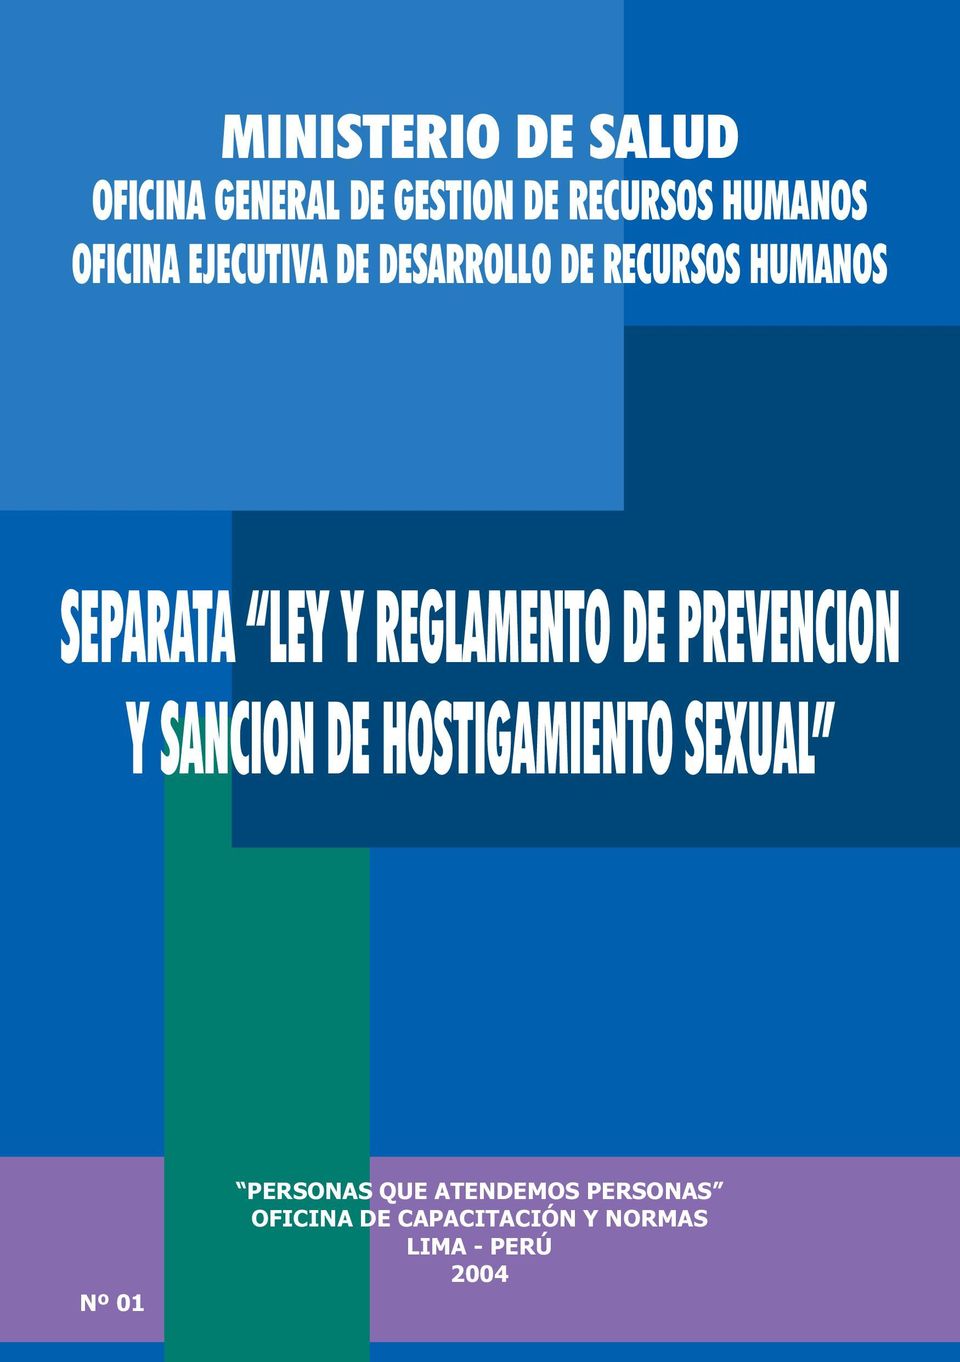 REGLAMENTO DE PREVENCION Y SANCION DE HOSTIGAMIENTO SEXUAL Nº 01